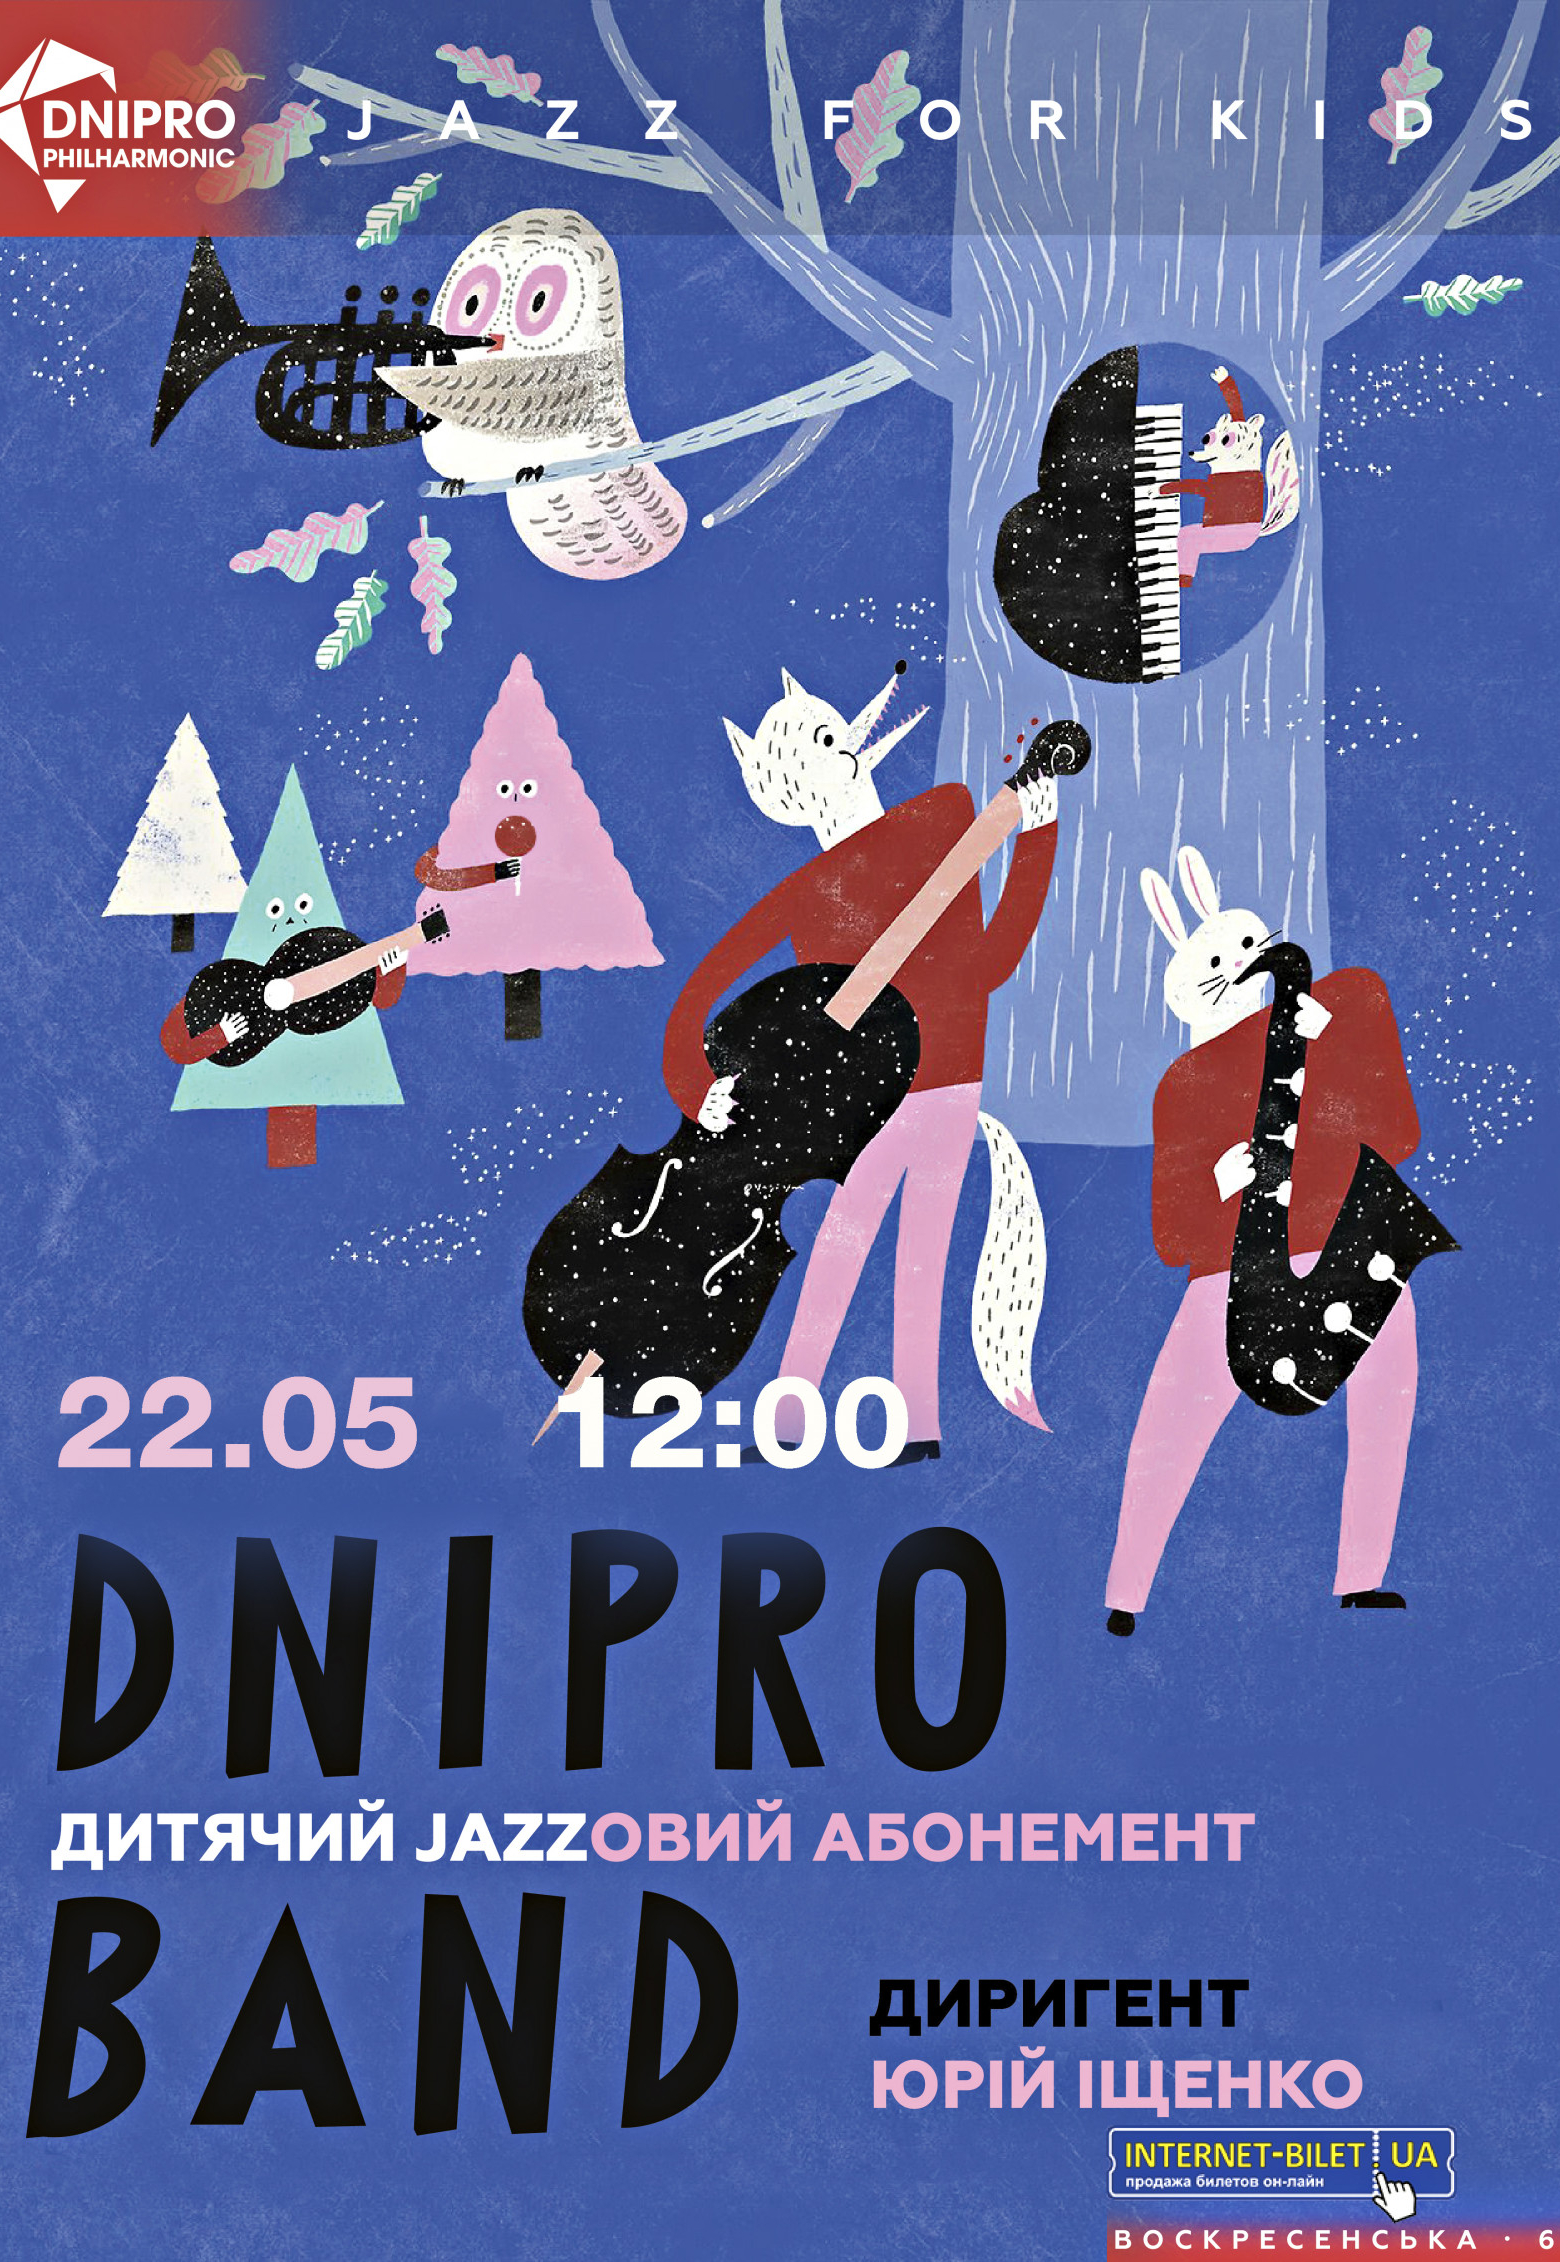 Детский джазовый абонемент Днепр, 22.05.2021, купить билеты. Афиша Днепра